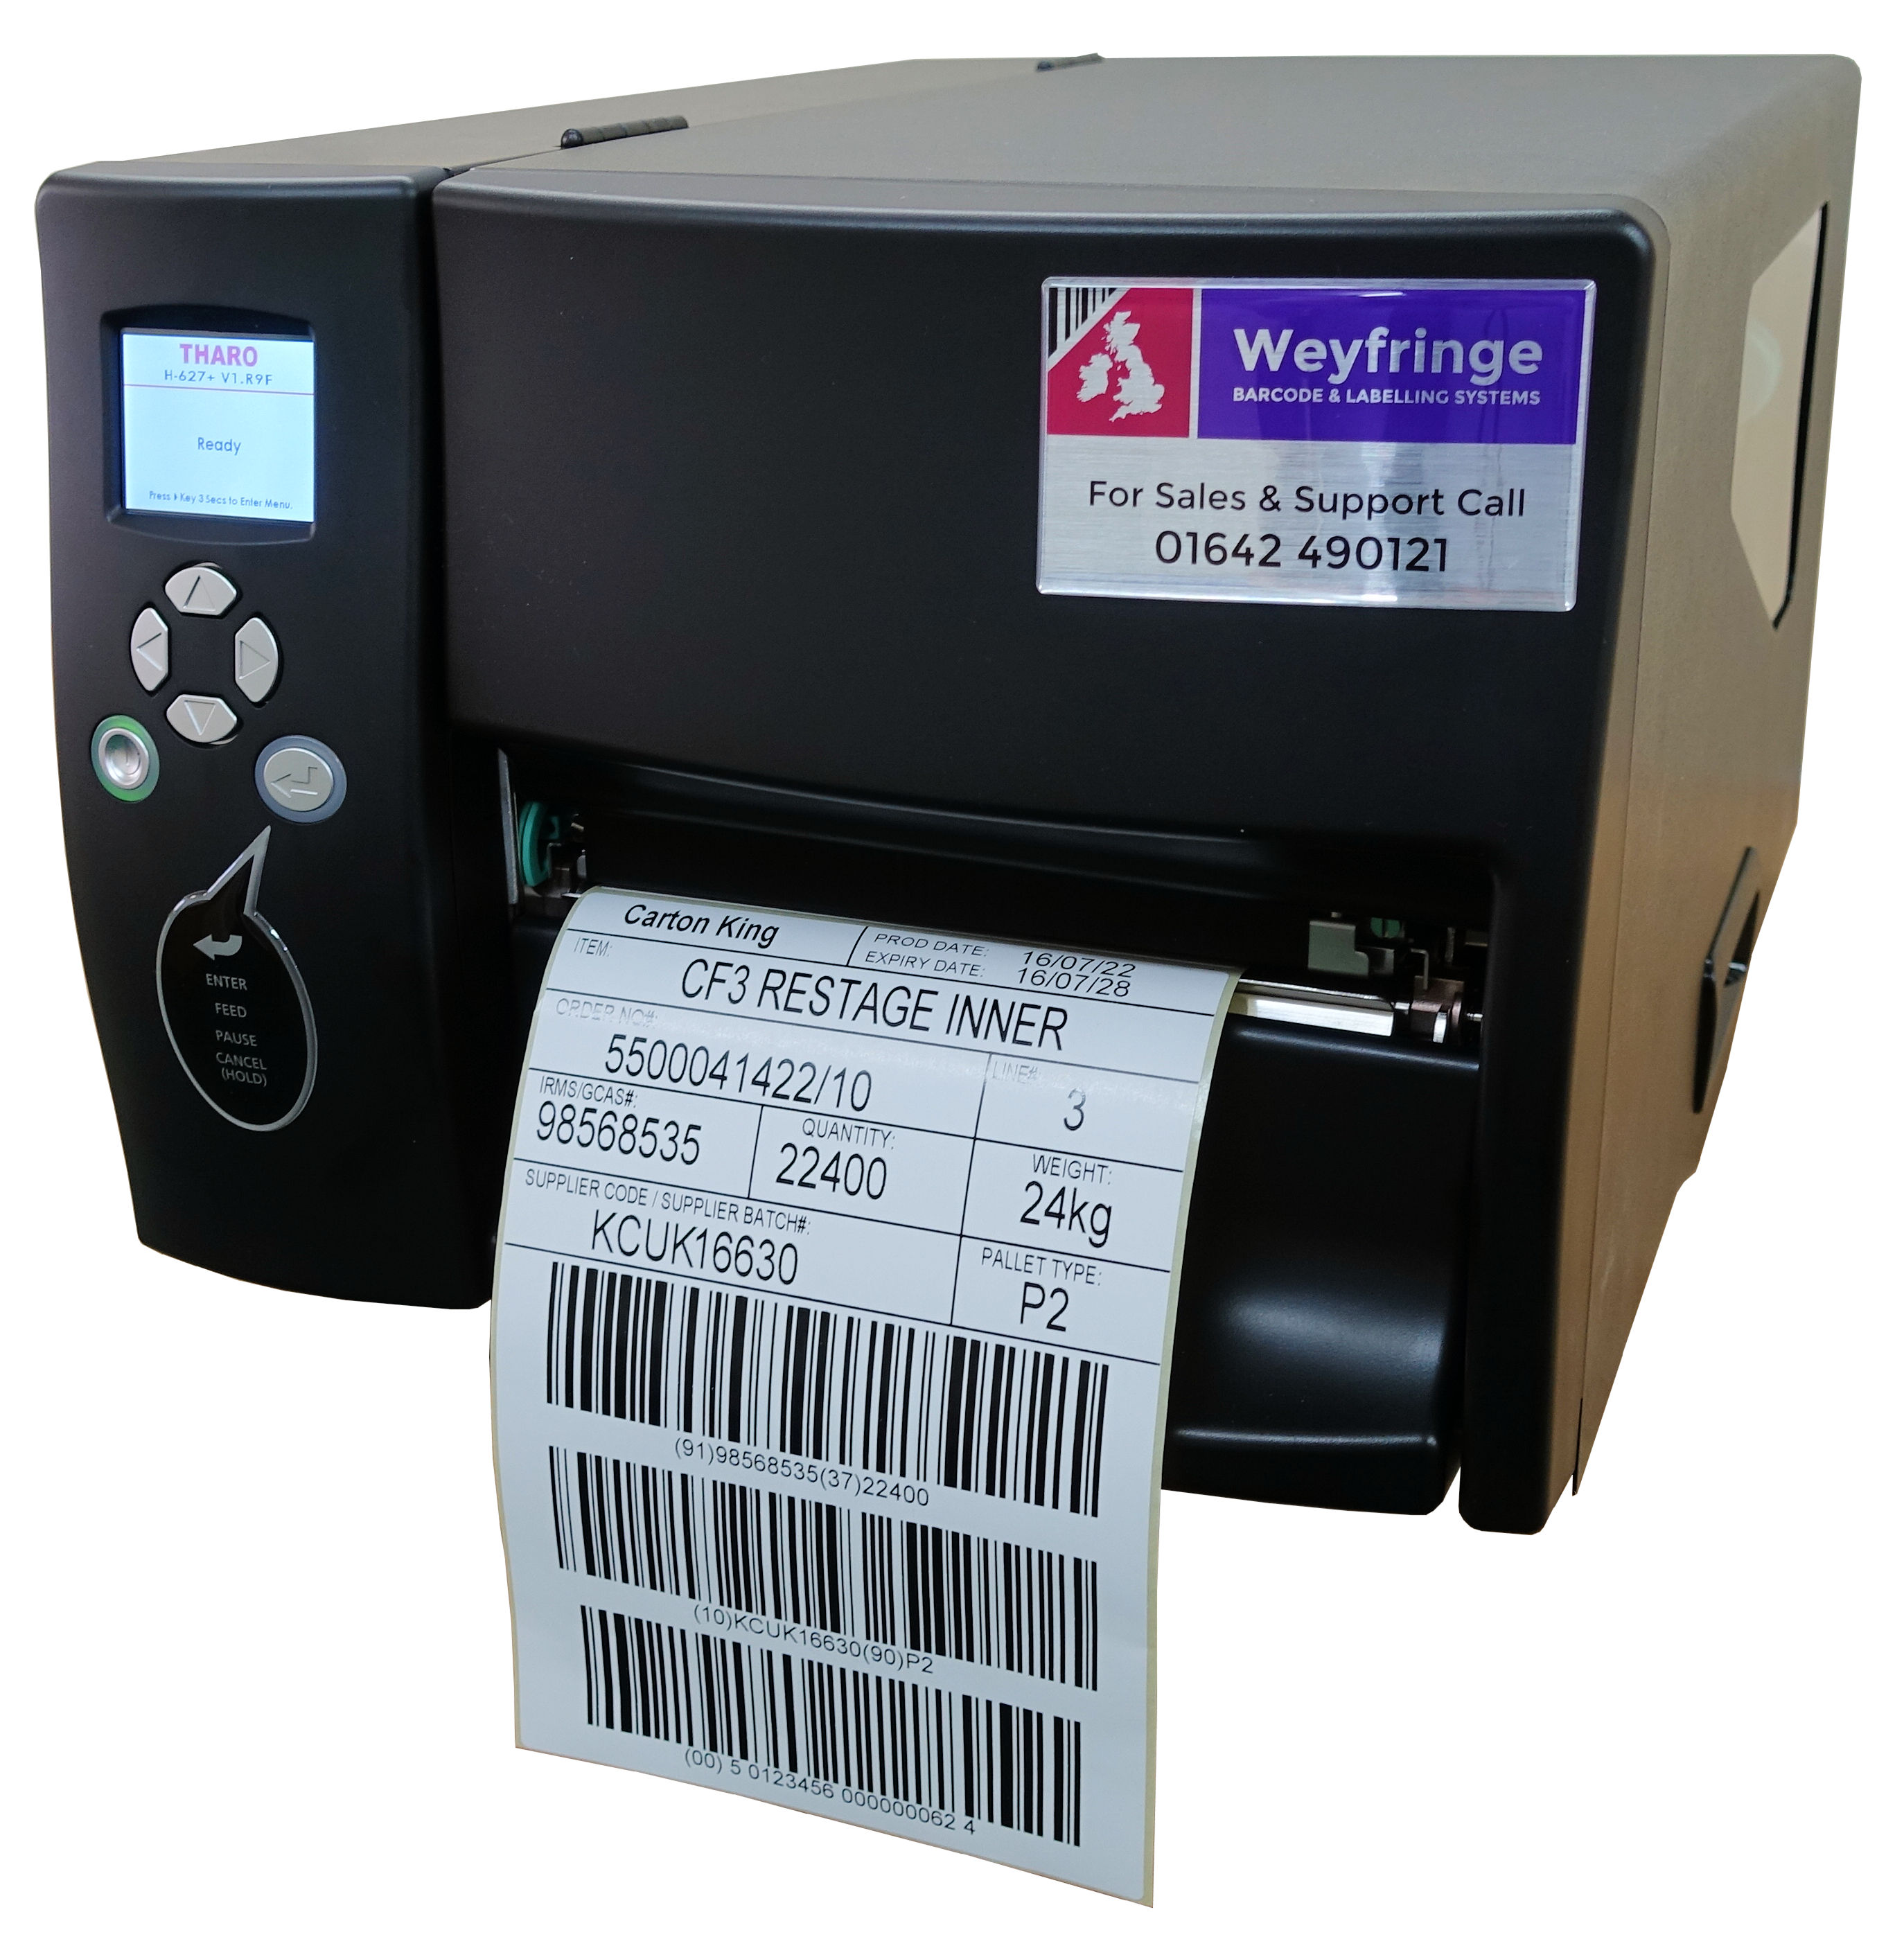 Weyfringe H600+ 6" wide label printer